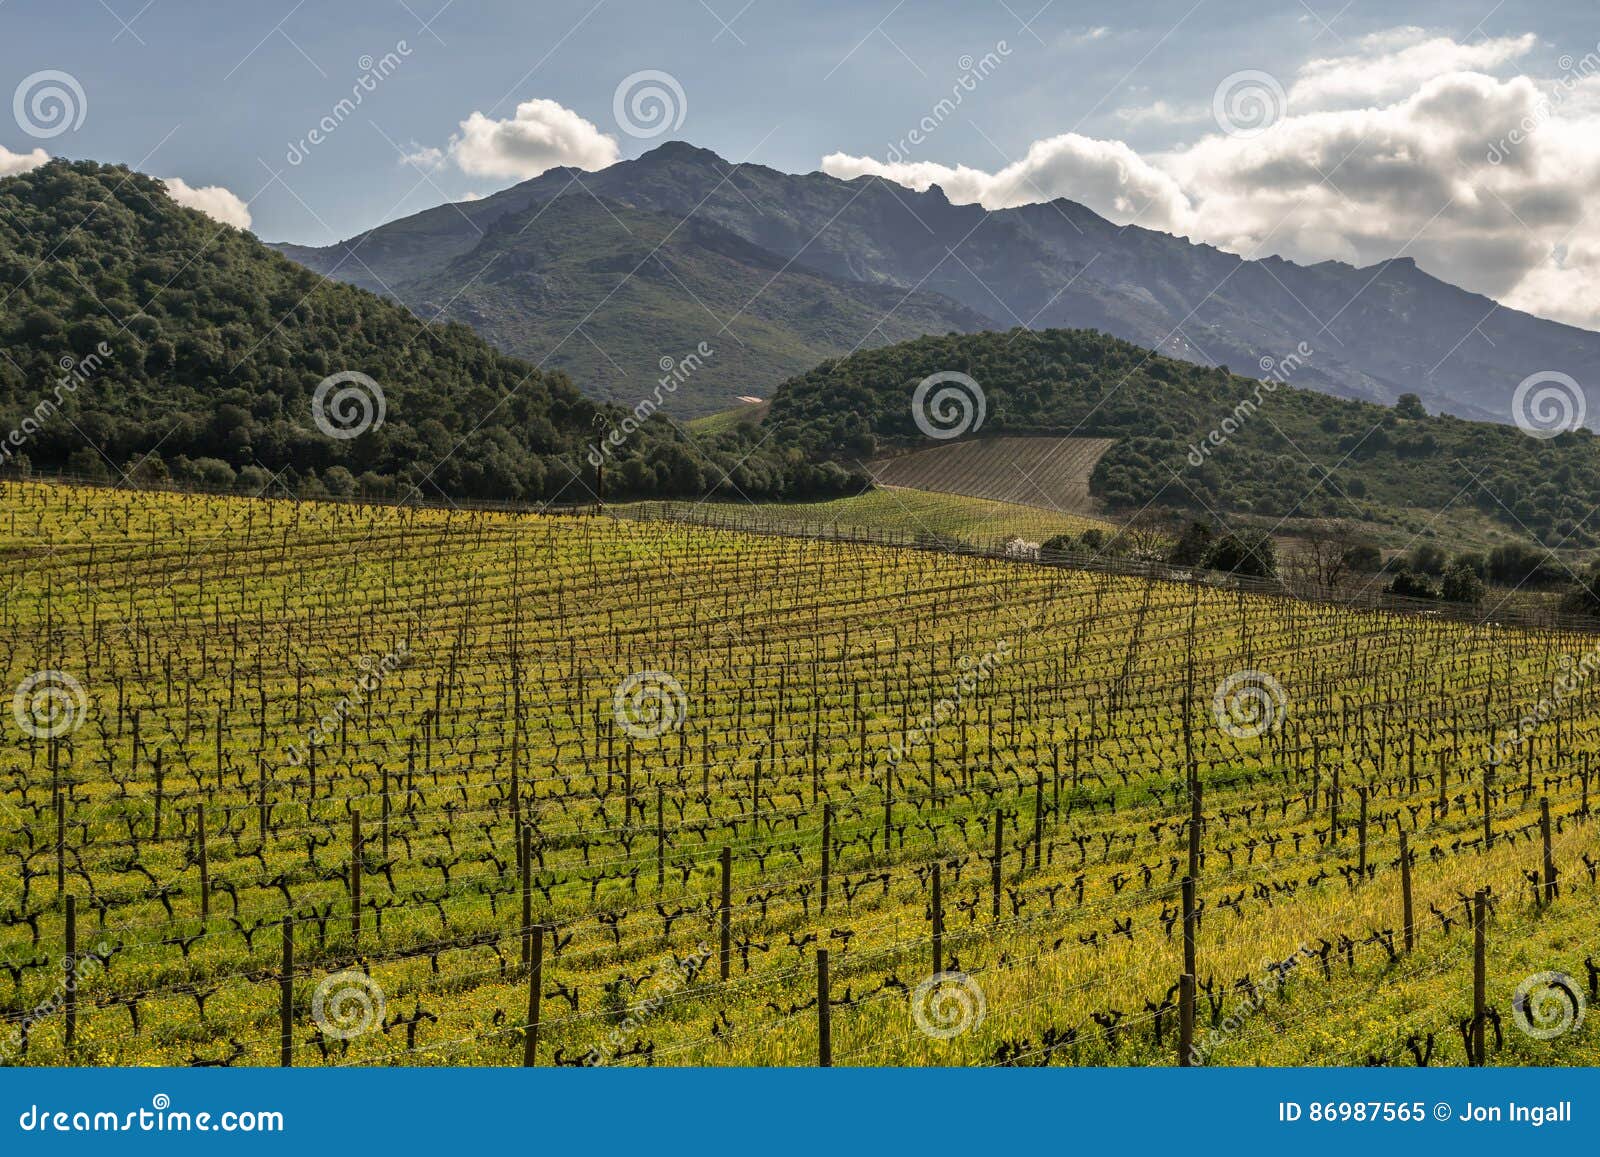 vineyard in winter sun at patrimonio in corsica